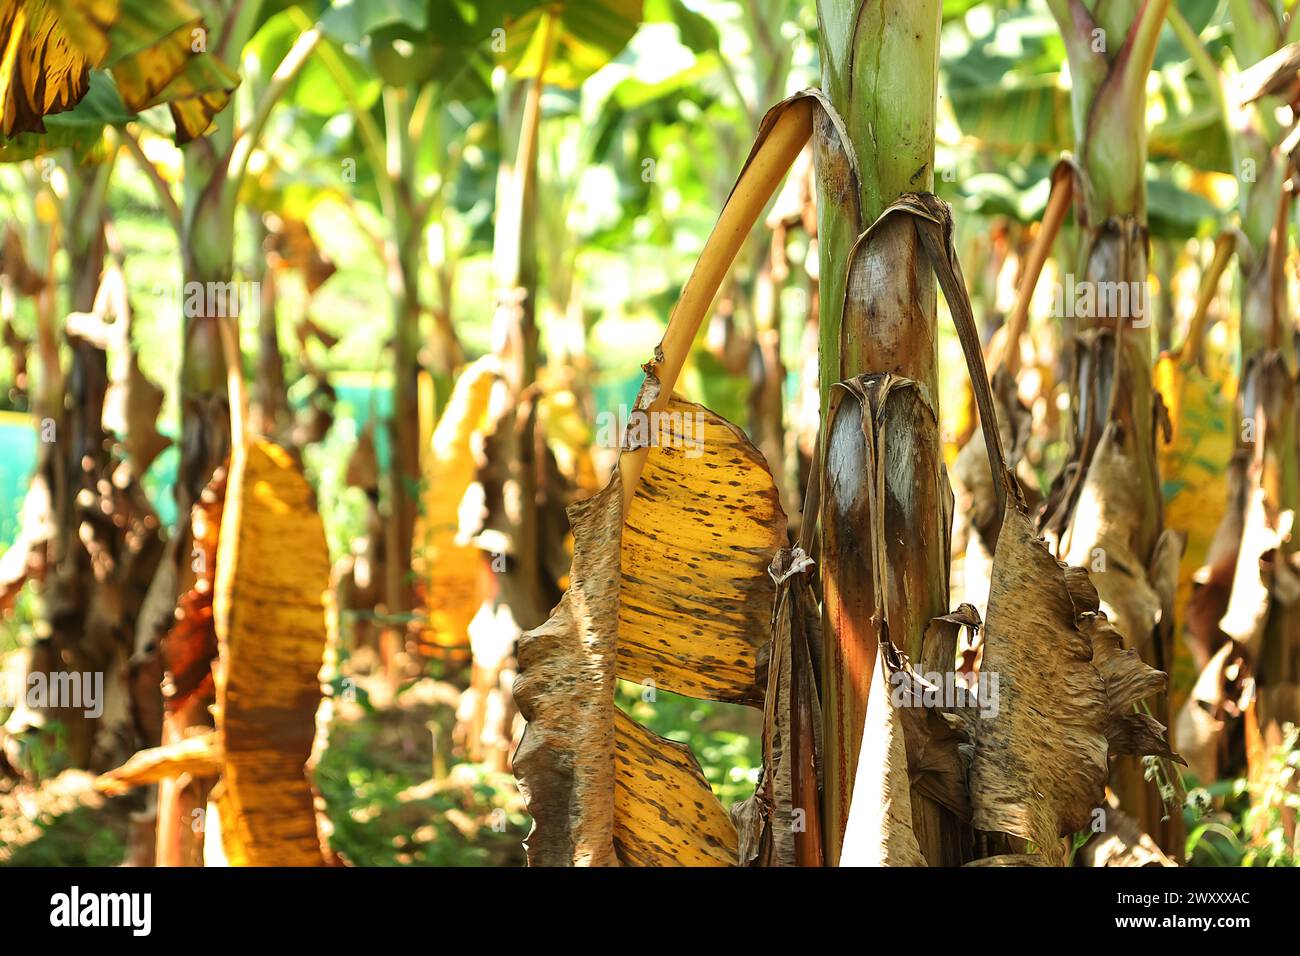 Bananenbaum hinterlässt Ein detailreiches Nahfoto, das die leuchtend grüne Textur und die Linien eines Bananenblattes zeigt und natürliche Muster unterstreicht Stockfoto